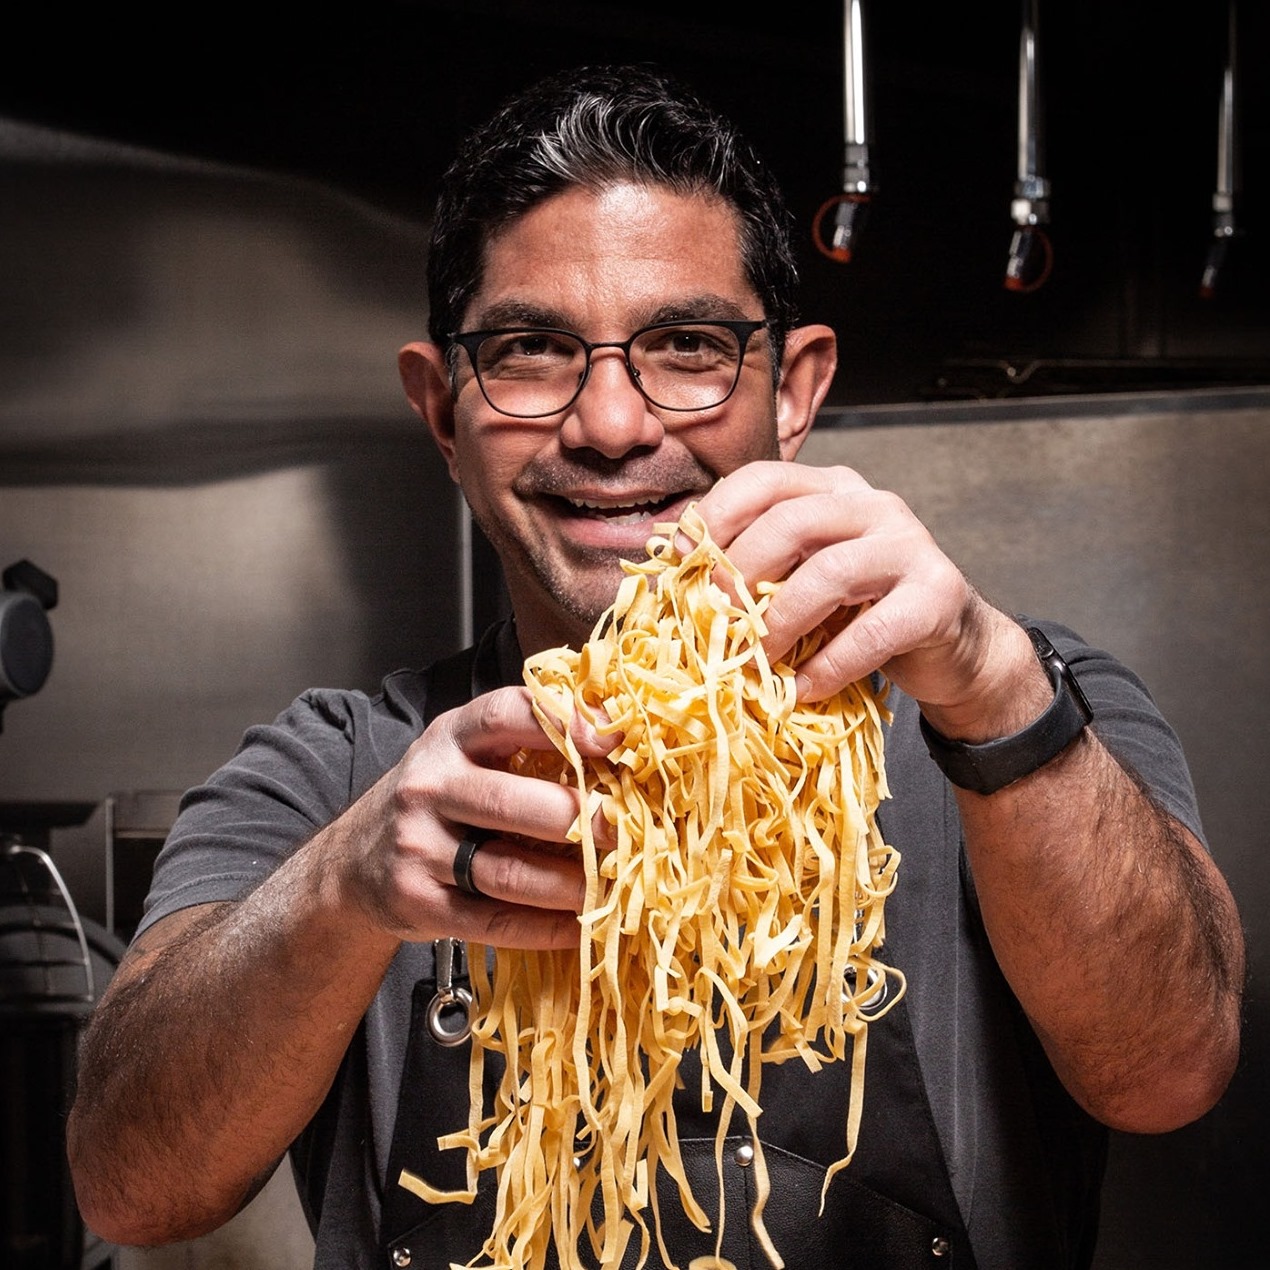 Luke Palladino with pasta